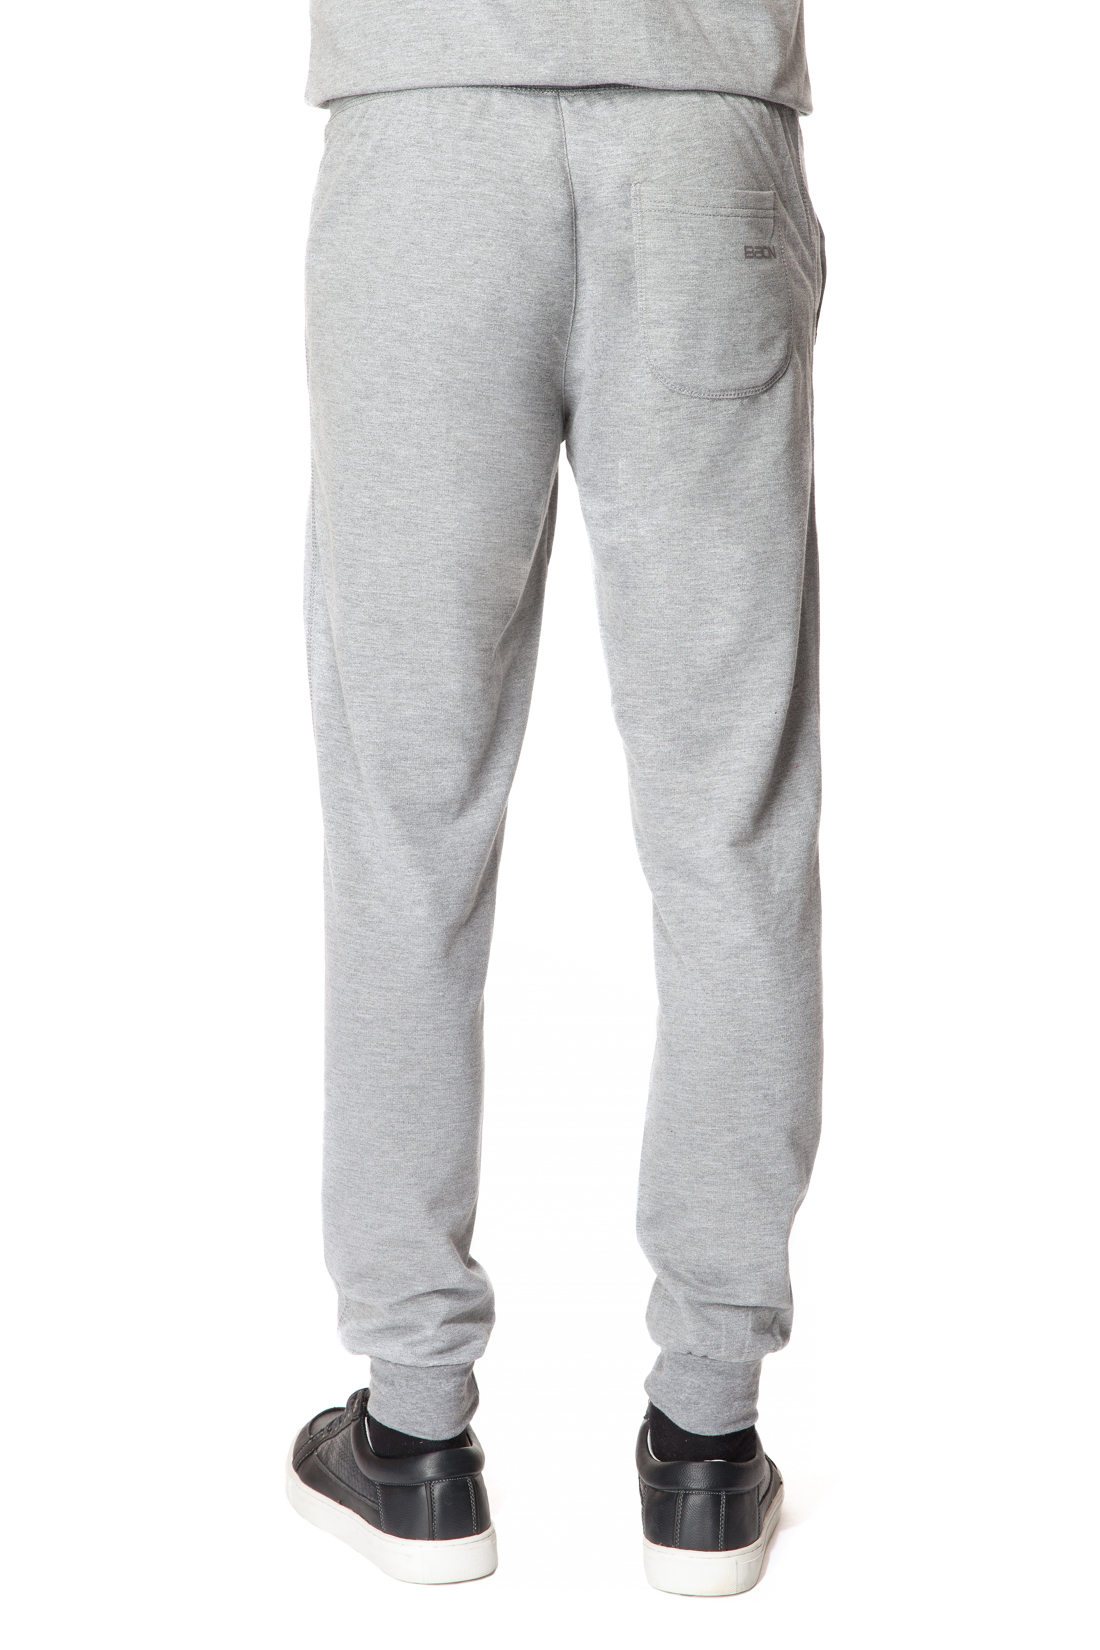 Спортивные брюки с манжетами (арт. baon B797301), размер XL, цвет cold grey melange#серый Спортивные брюки с манжетами (арт. baon B797301) - фото 2